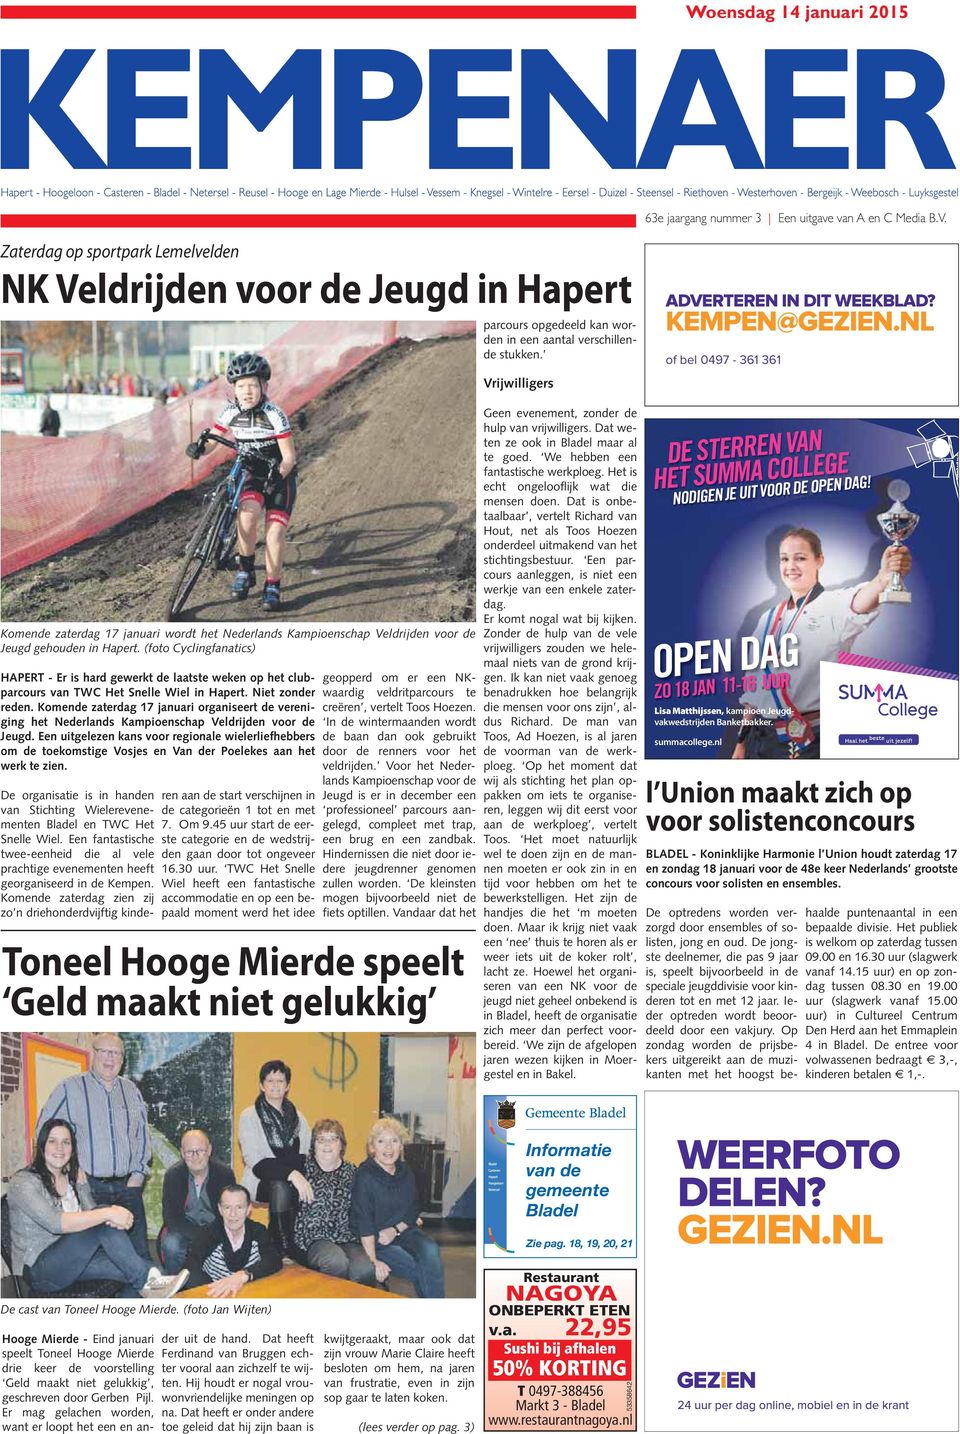 NL of bel 0497-361 361 Komende zaterdag 17 januari wordt het Nederlands Kampioenschap Veldrijden voor de Jeugd gehouden in Hapert.